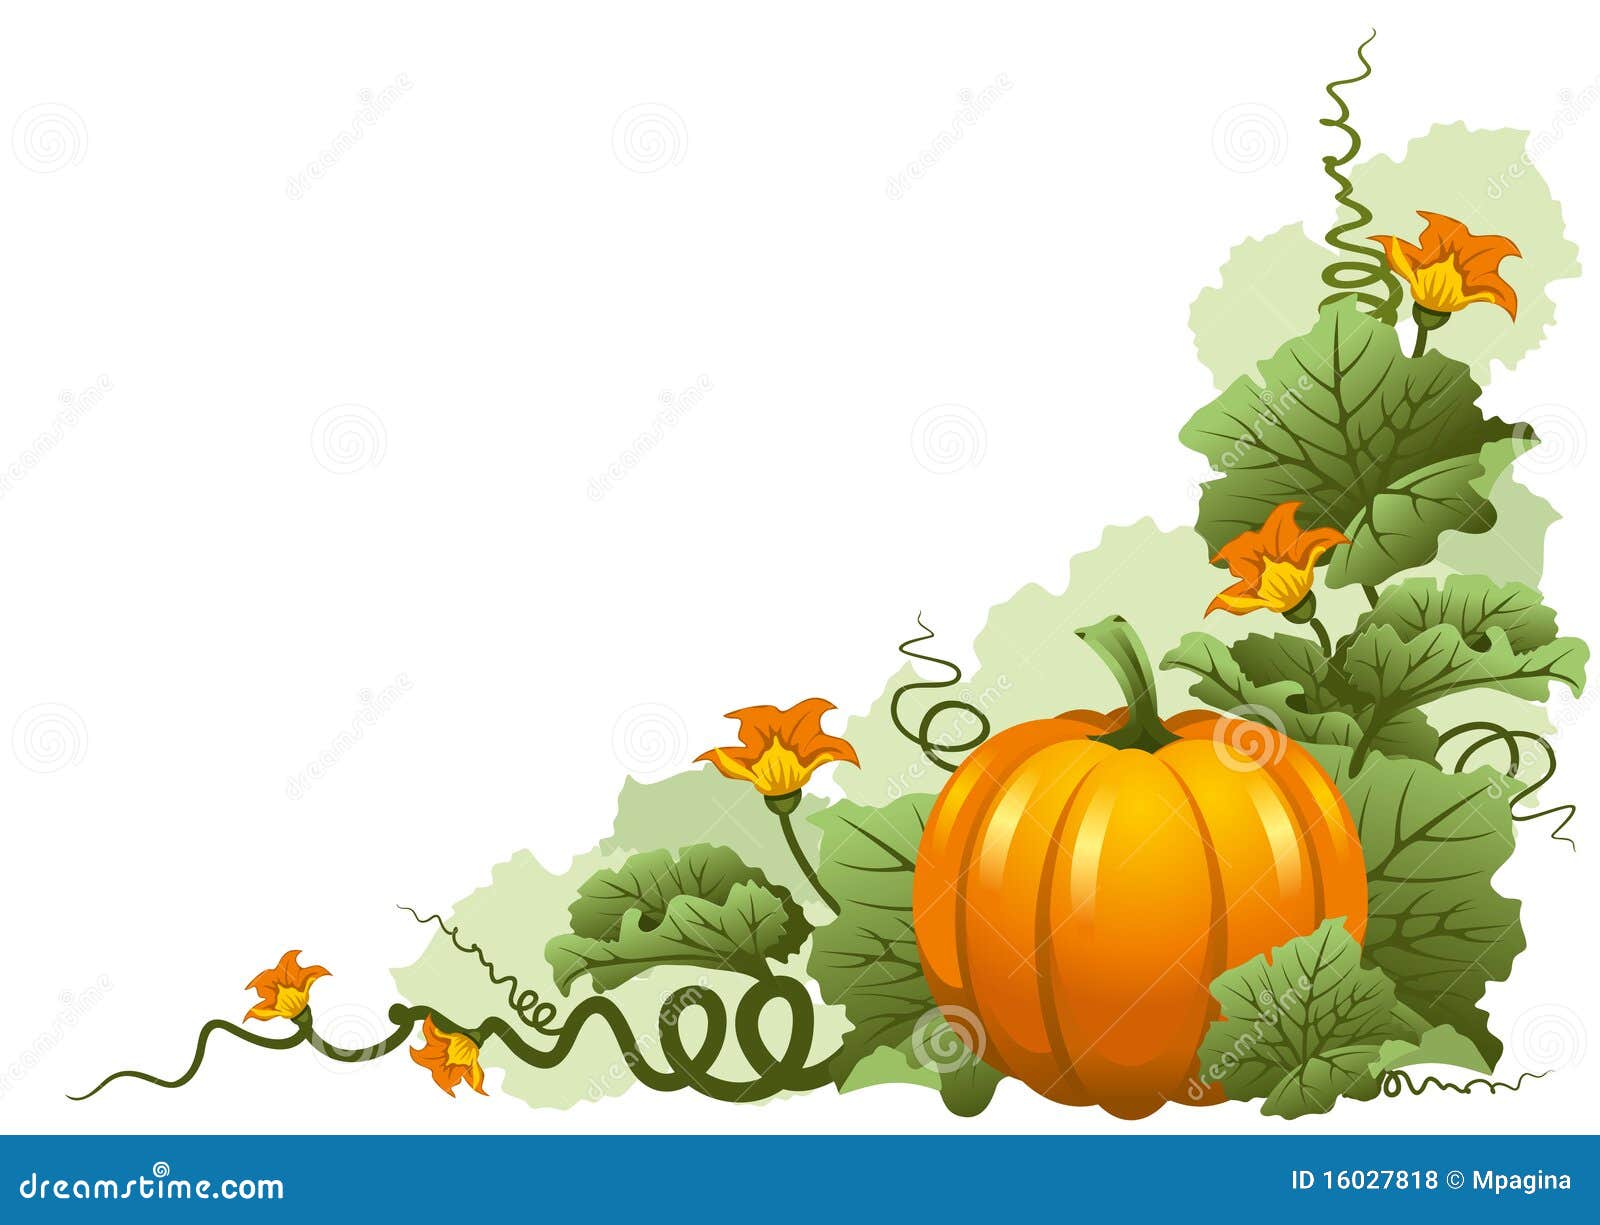 Vector illustratie van rijpe oktober pompoen